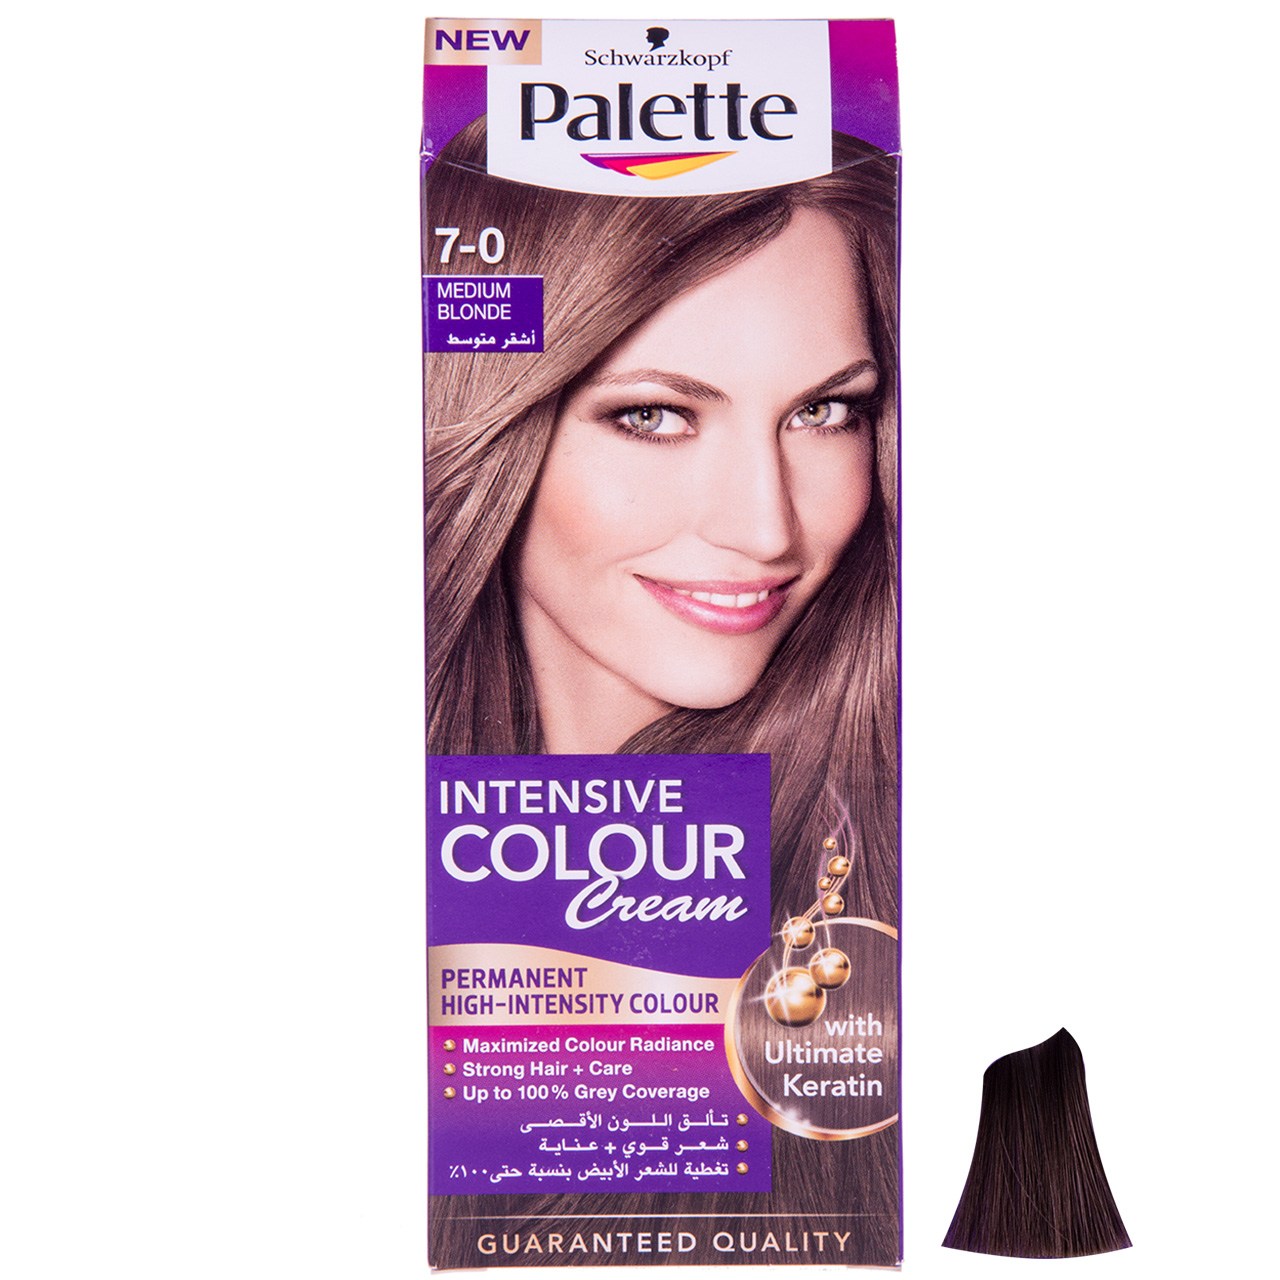 کیت رنگ مو پلت سری Intensive Colour Cream مدل بلوند متوسط شماره 0-7